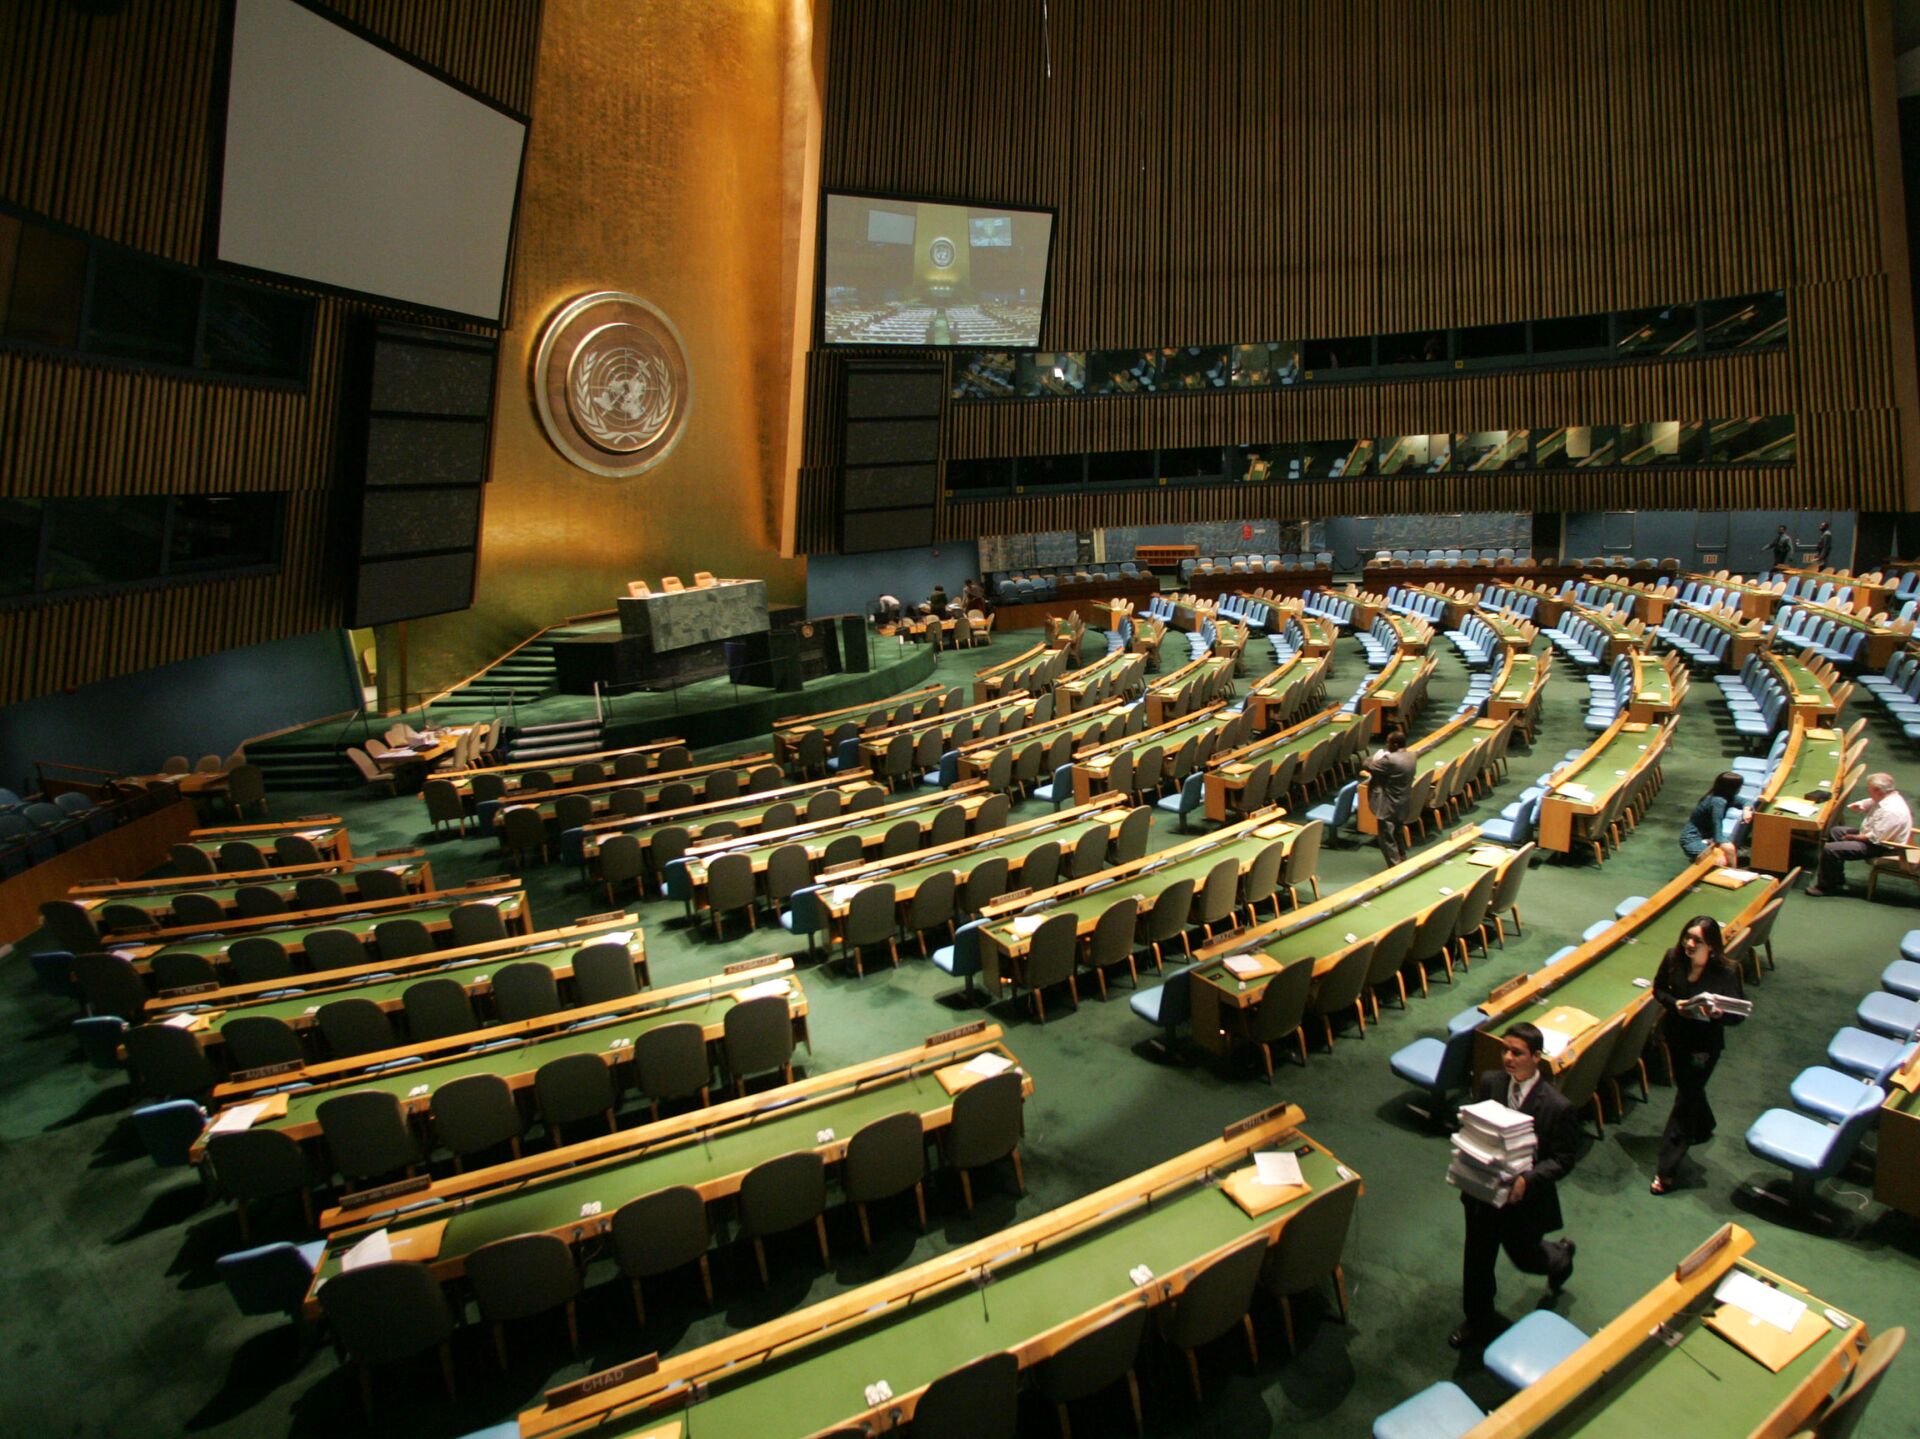 Членство оон. Зал Генеральной Ассамблеи ООН. Зал заседания Генассамблеи ООН трибуна. Генеральная Ассамблея ООН 2022. Зал Генеральной Ассамблеи ООН В Нью-Йорке.